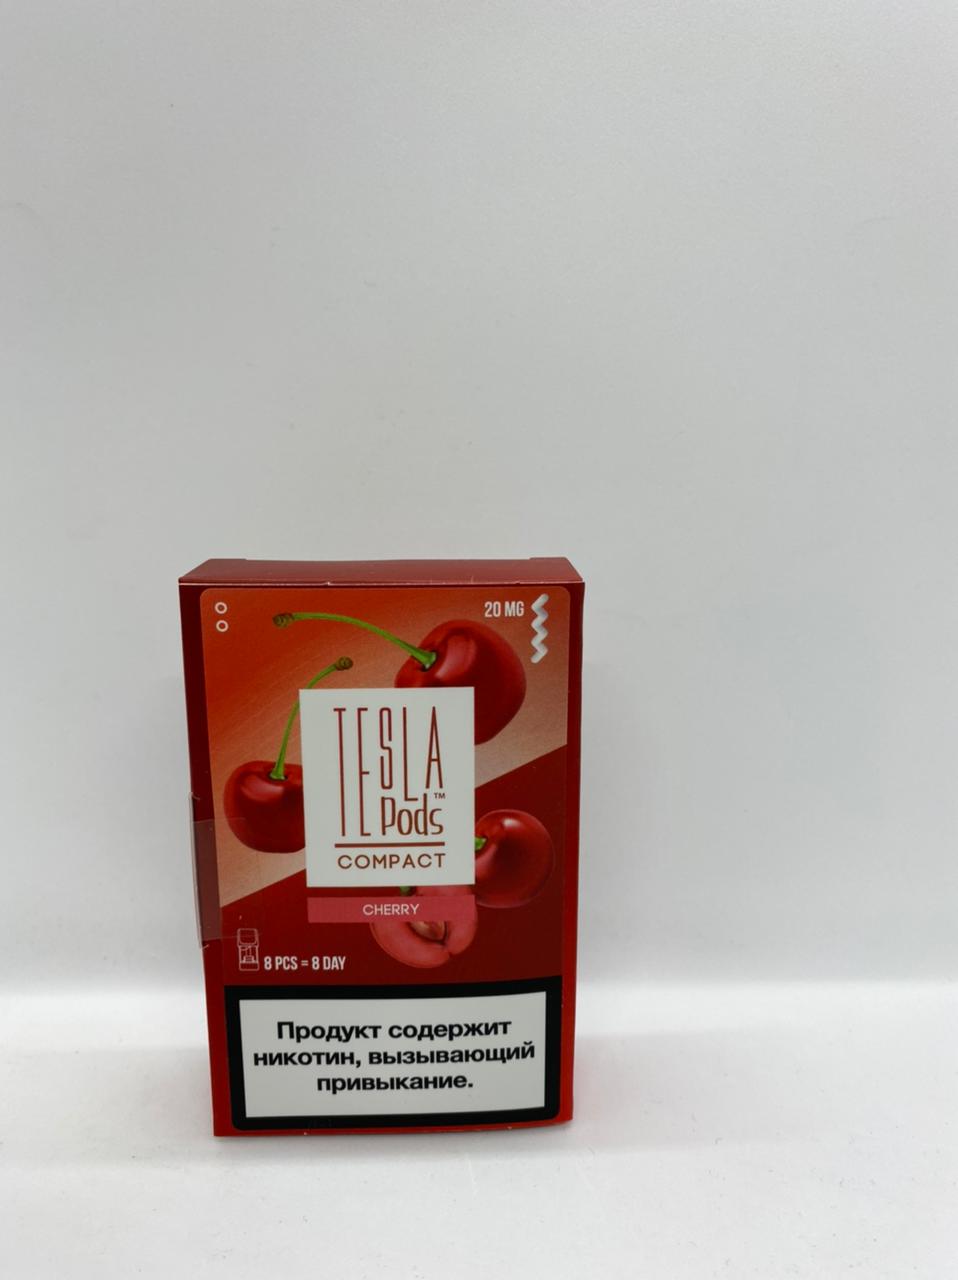 Набор TESLA pods Картридж Cherry 2% (8 картриджей) compact для Logic с доставкой по Москве и России